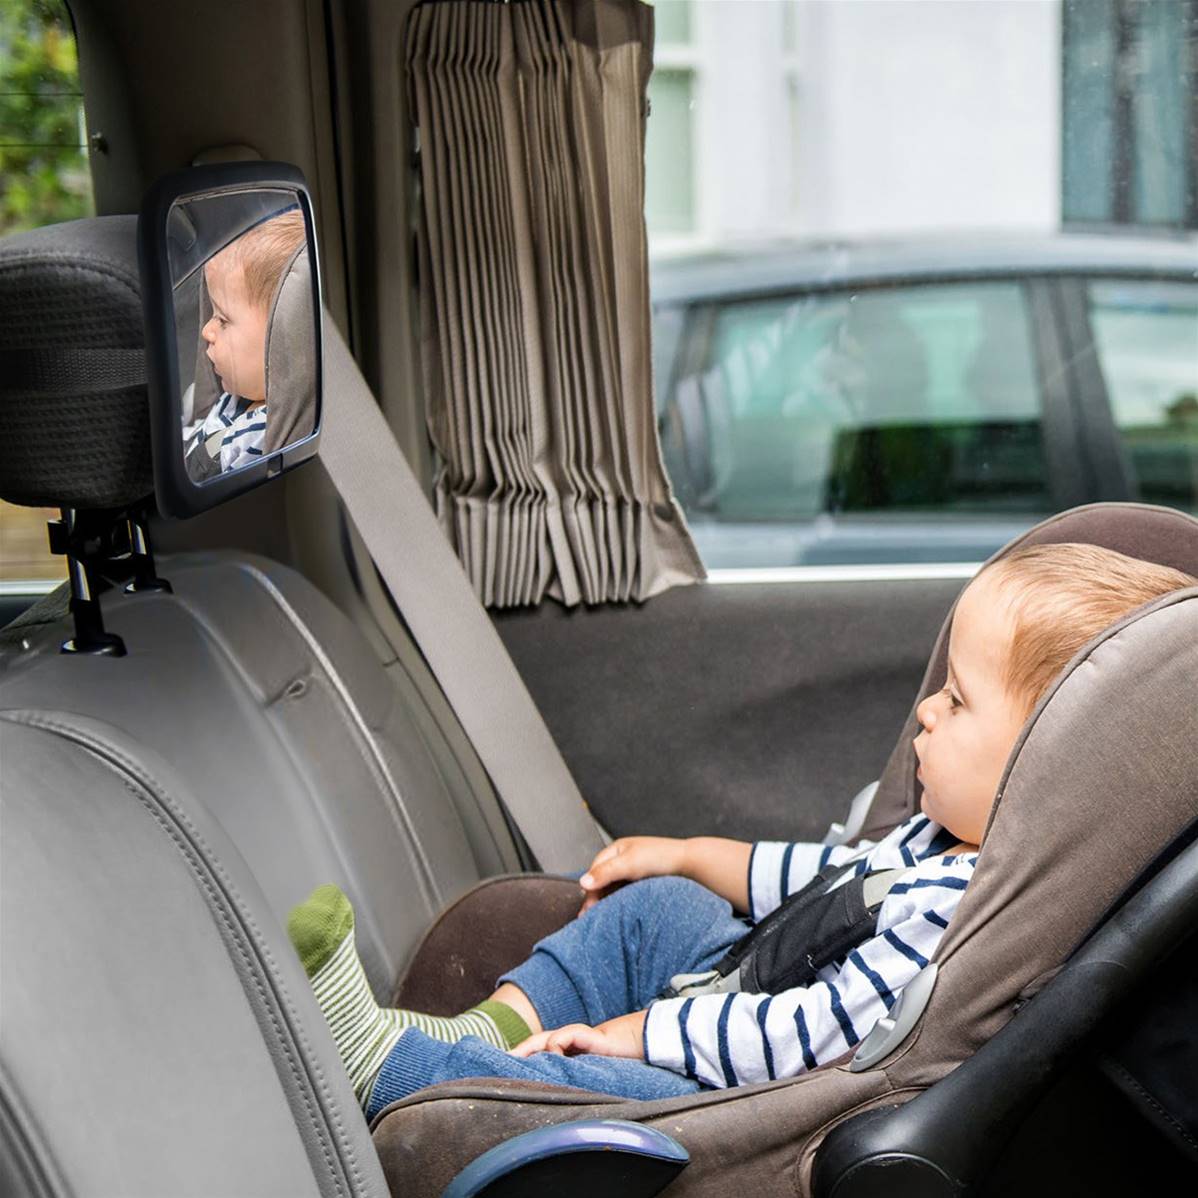 Miroir de surveillance pour bébé en voiture - sans se retourner